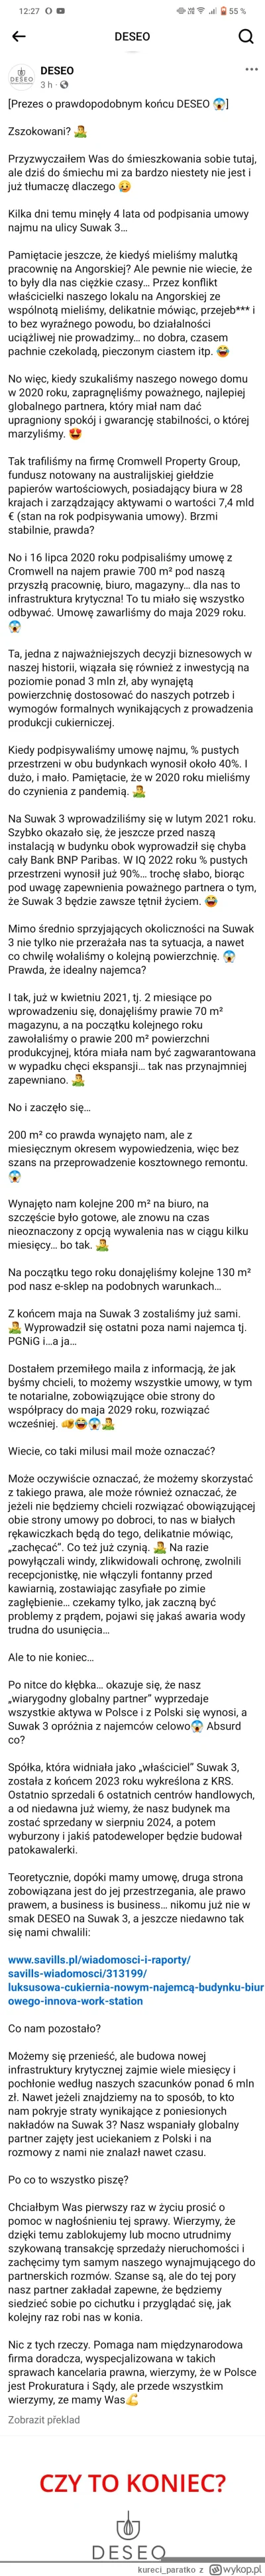 kureci_paratko - Dla ludzi bez FB